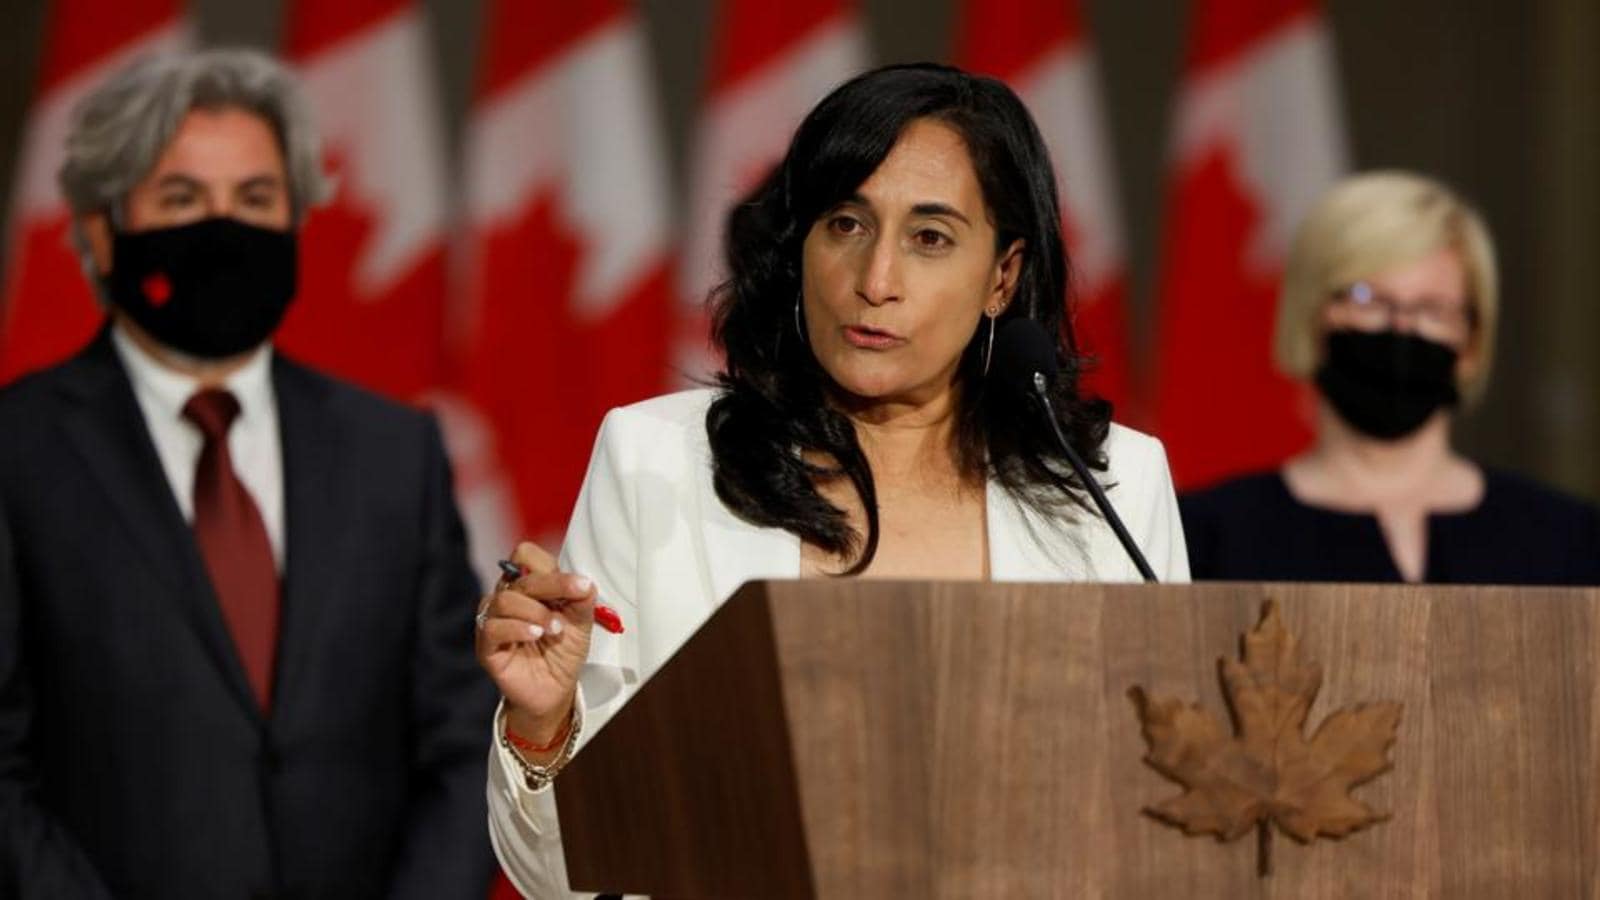 كندا: إحالة ملفّ سوء السلوك الجنسي في القوّات المسلّحة أمام القضاء المدني